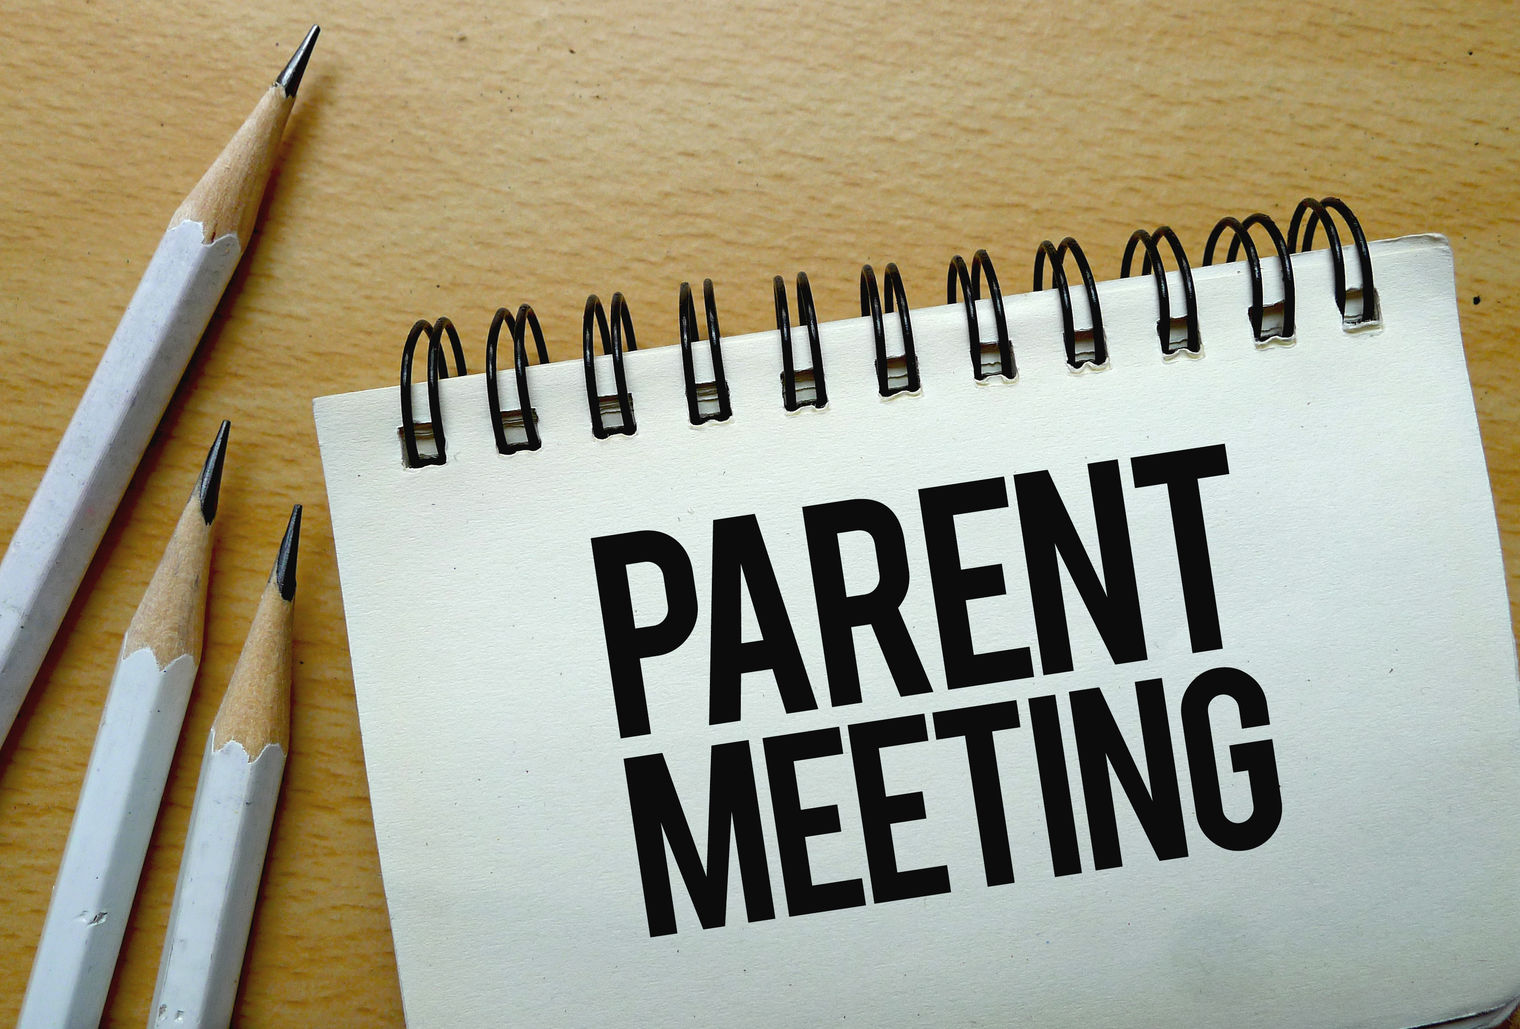 Parent Meeting written on a spiral tablet